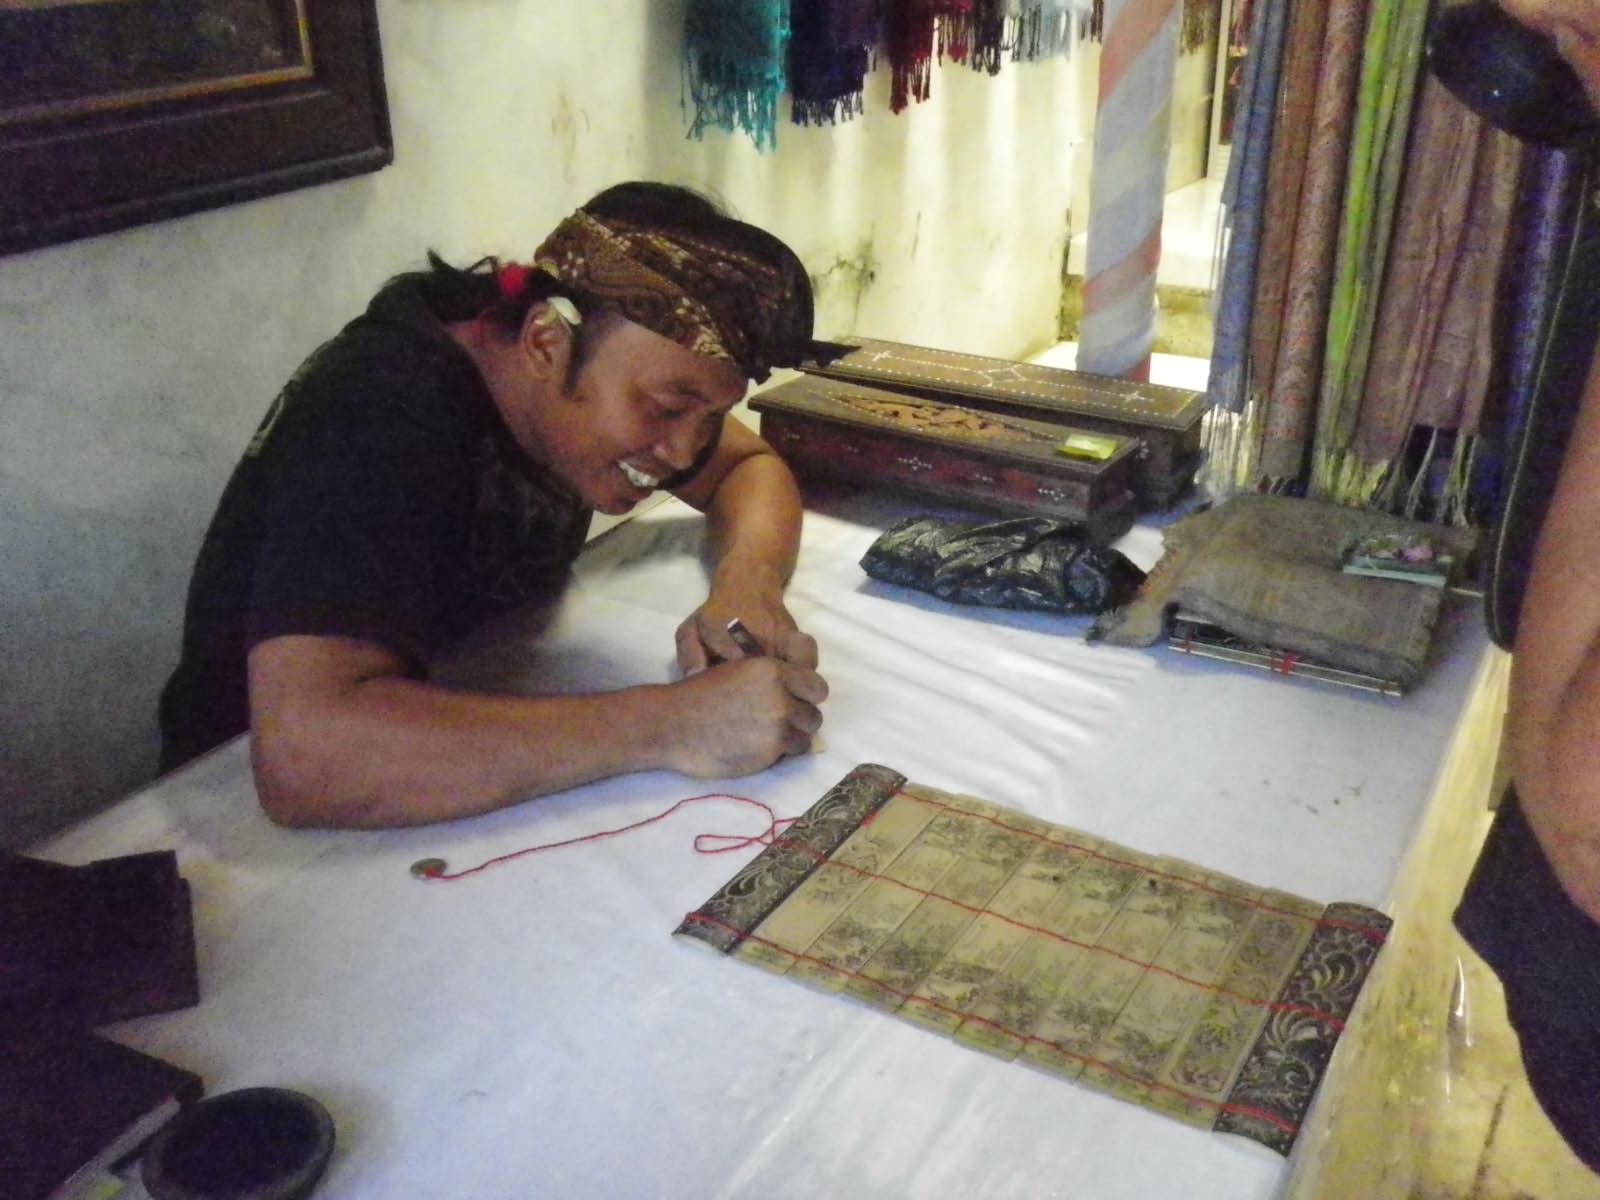 travail artisanal de gravures sur des feuilles de lontard (palmier)